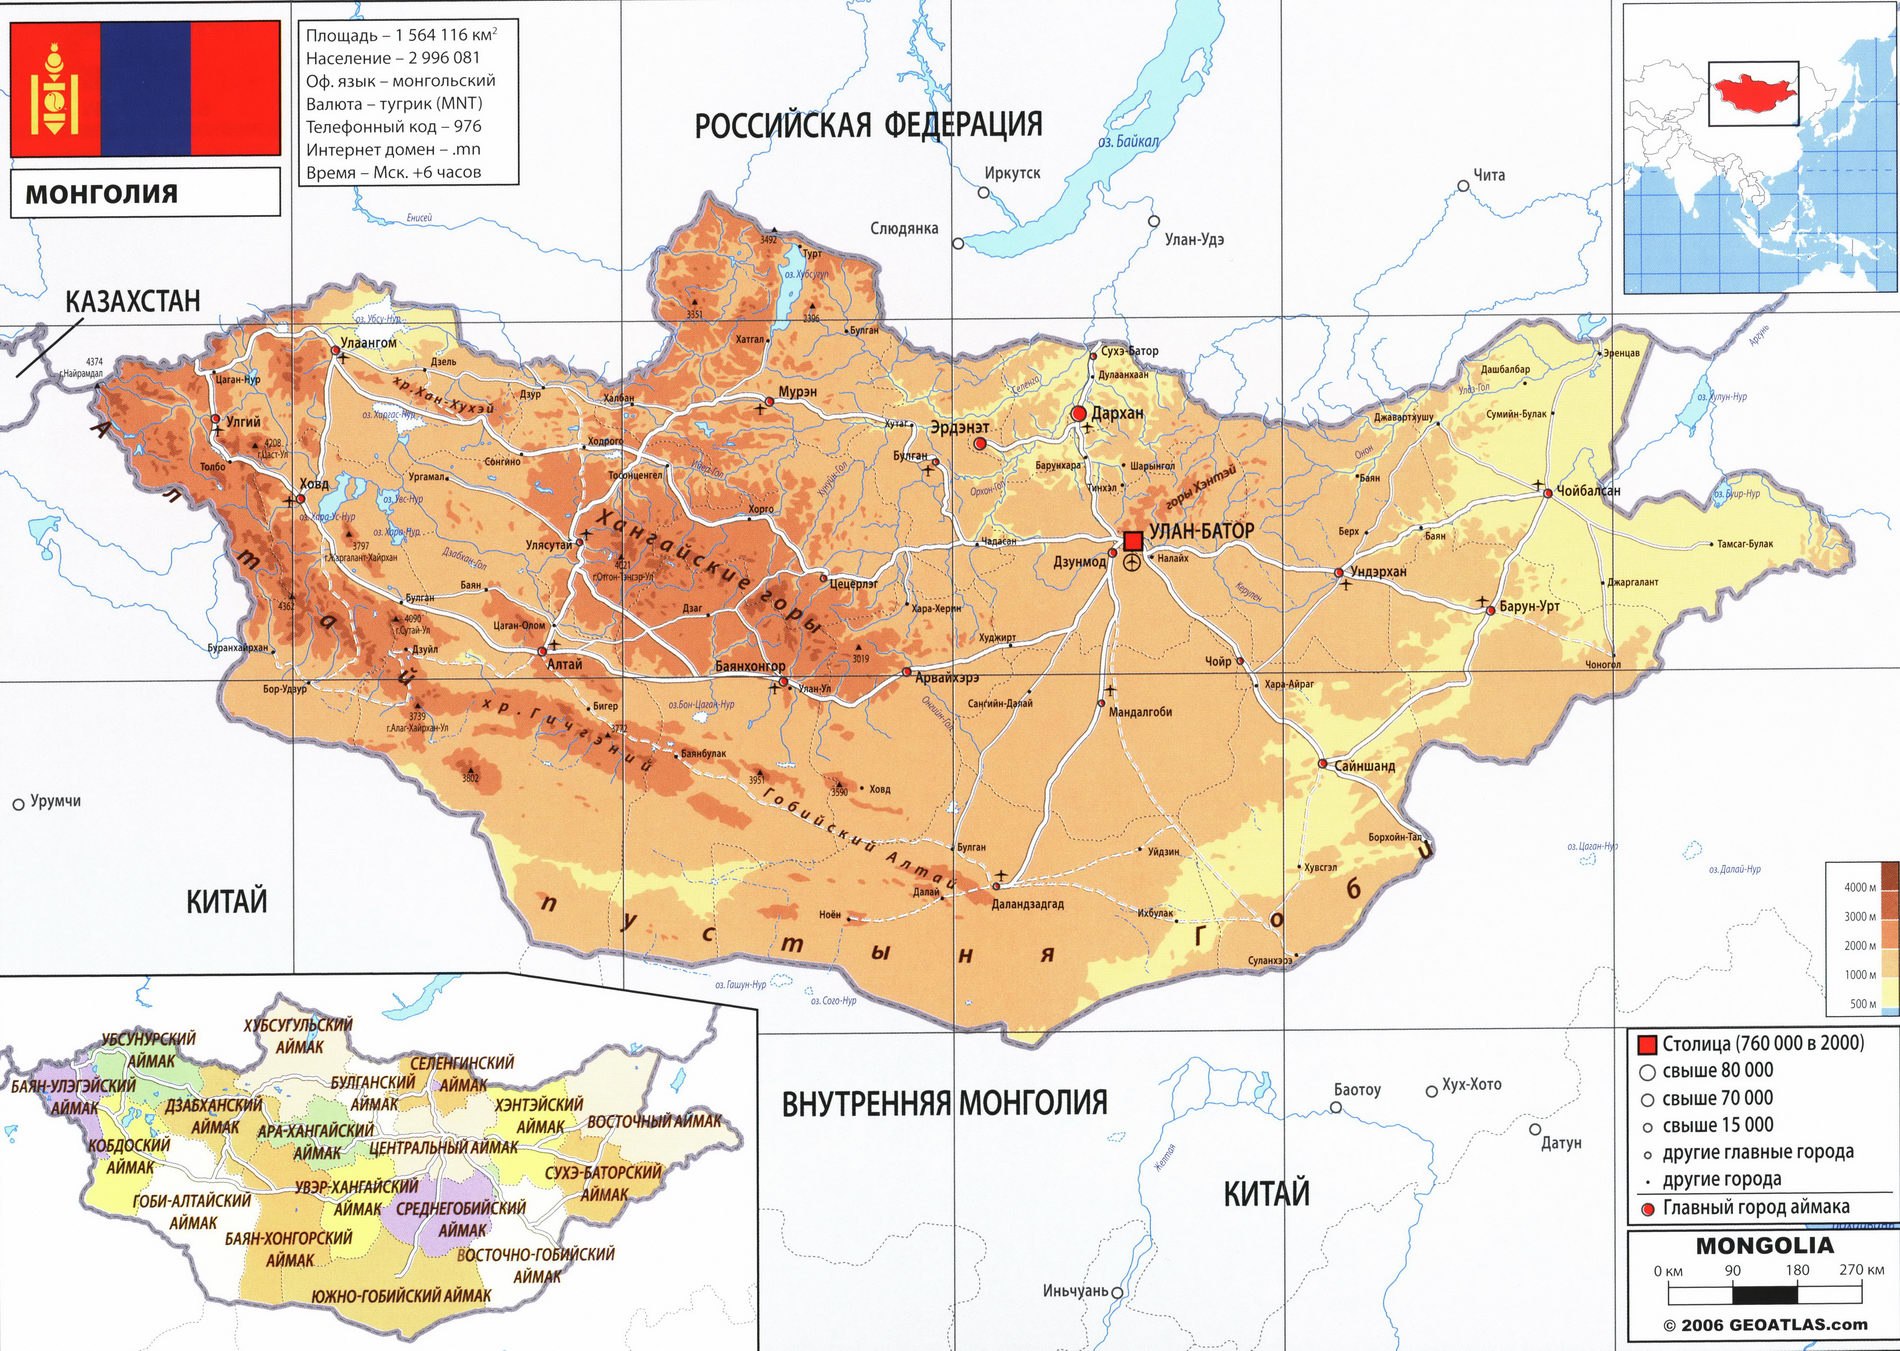 Монголия карта на русском языке